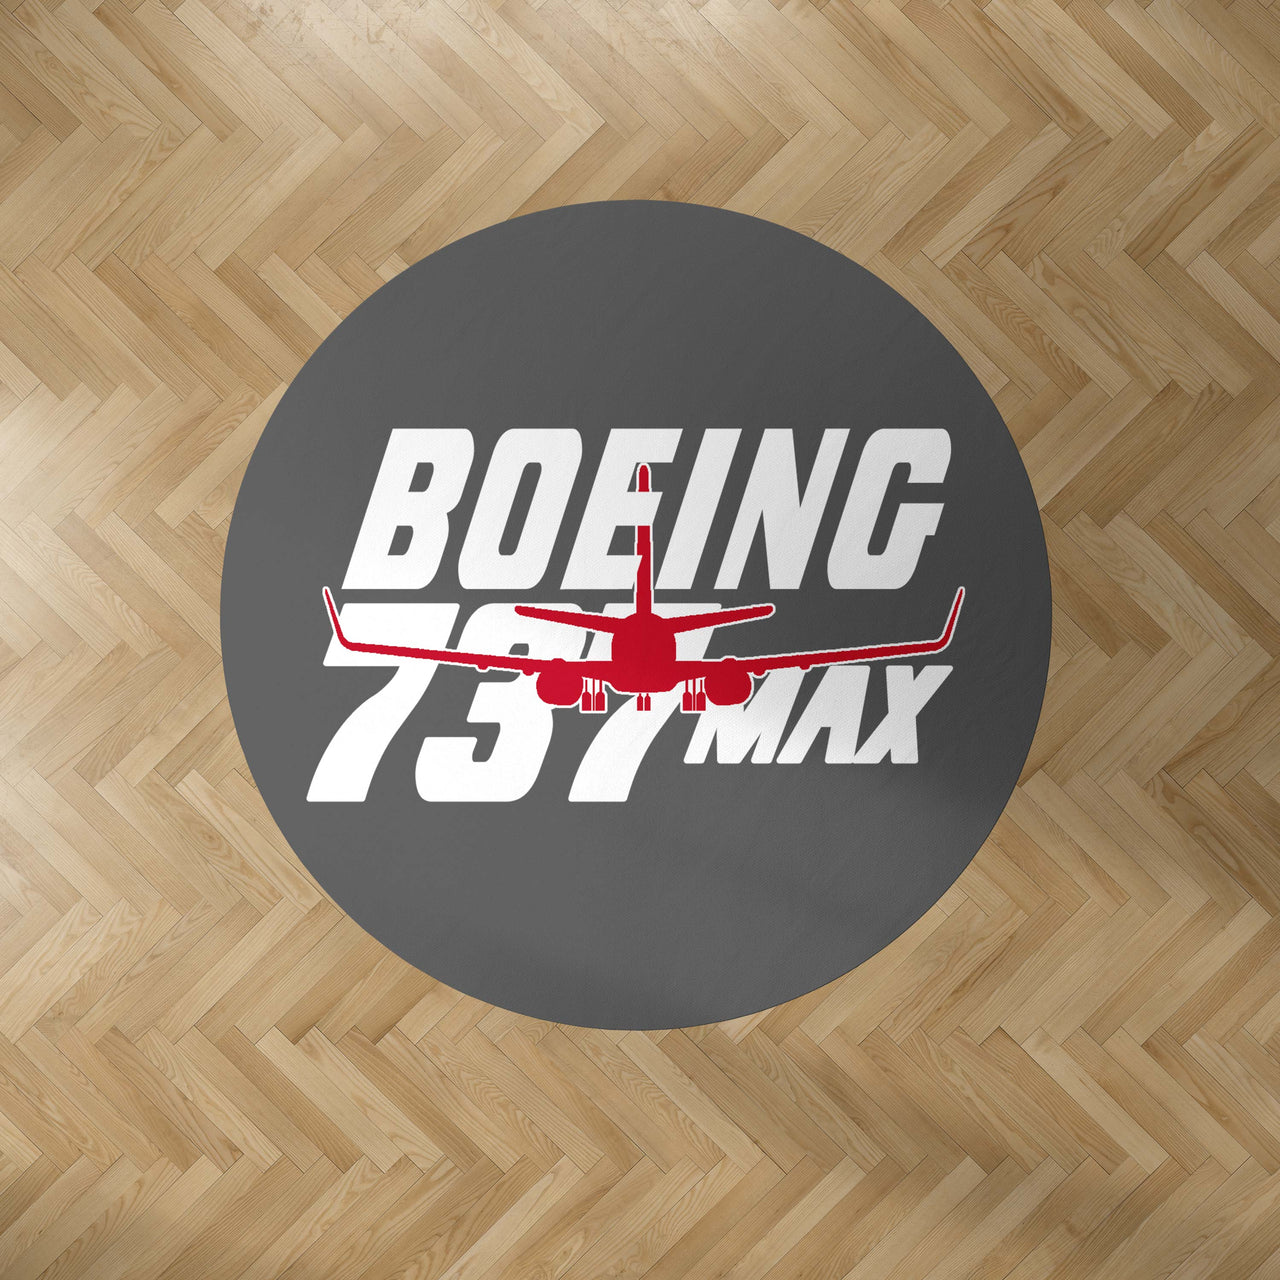 Amazing Boeing 737 Max Designed Carpet & Floor Mats (Round)